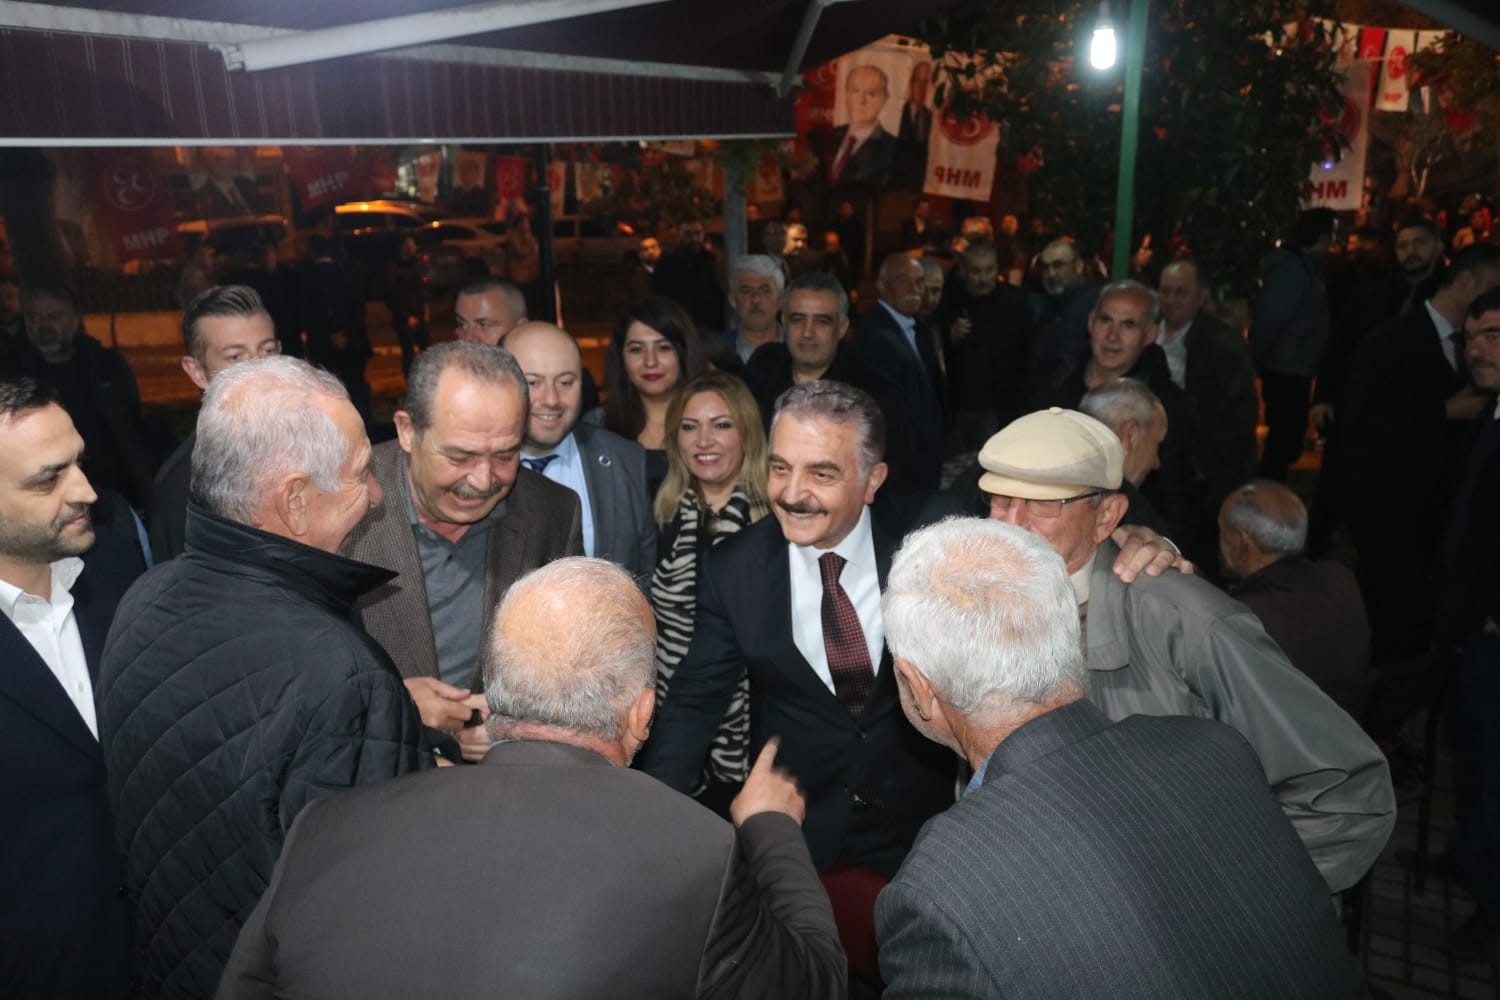 MHP Genel Sekreteri Büyükataman Kılıçdaroğlu’na seslendi: “Açıklamak mecburiyeti var”